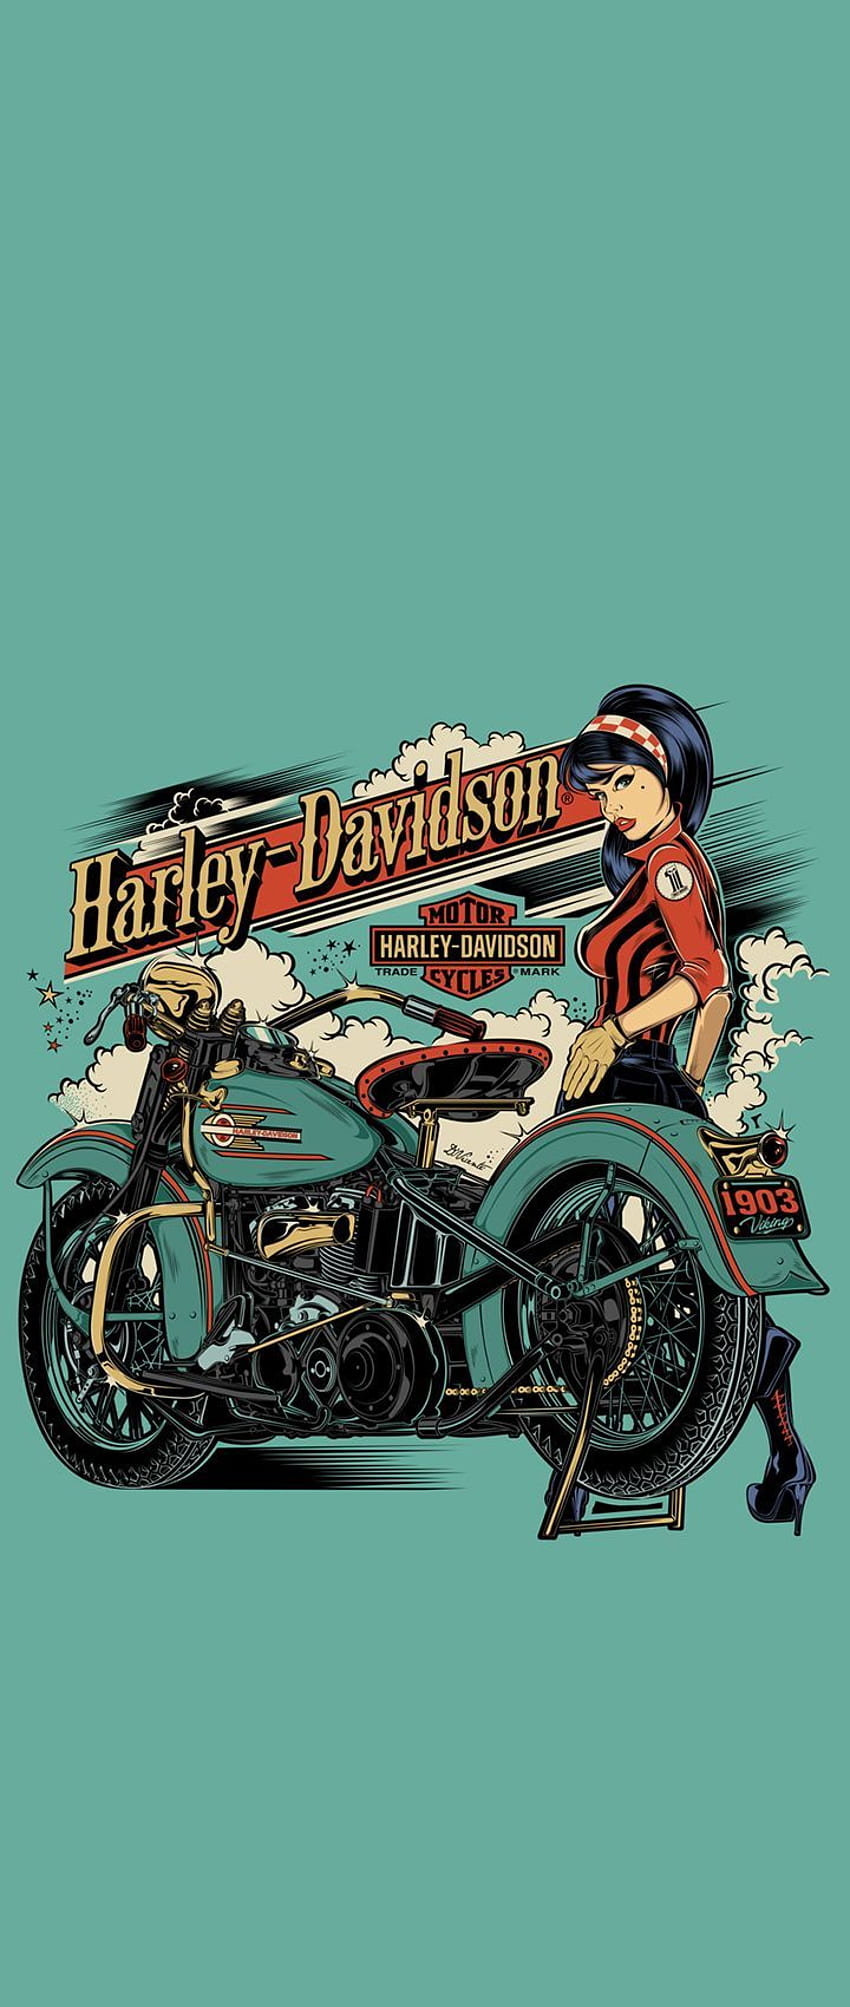 Harley Phone . Harley davidson , Harley davidson logo, Motorcycle harley, Motorcycle Drawings HD phone wallpaper